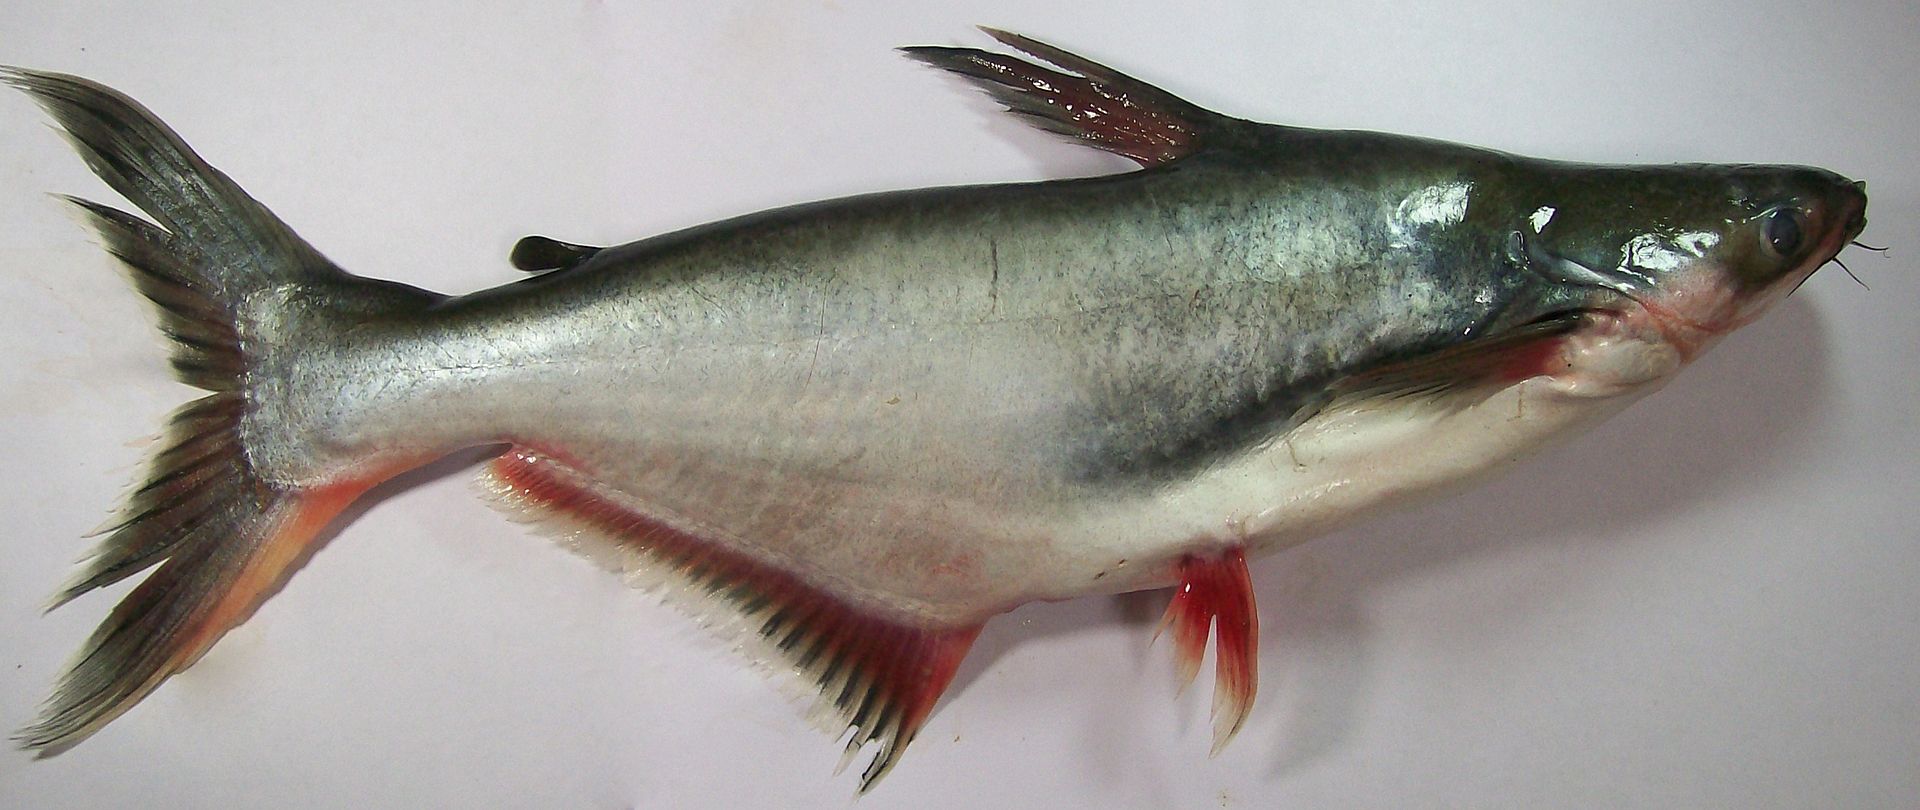 Tra Nuôi - Pangasius hypophthalmus là loại cá tra được nuôi thương mại nhiều nhất ở Việt Nam. 